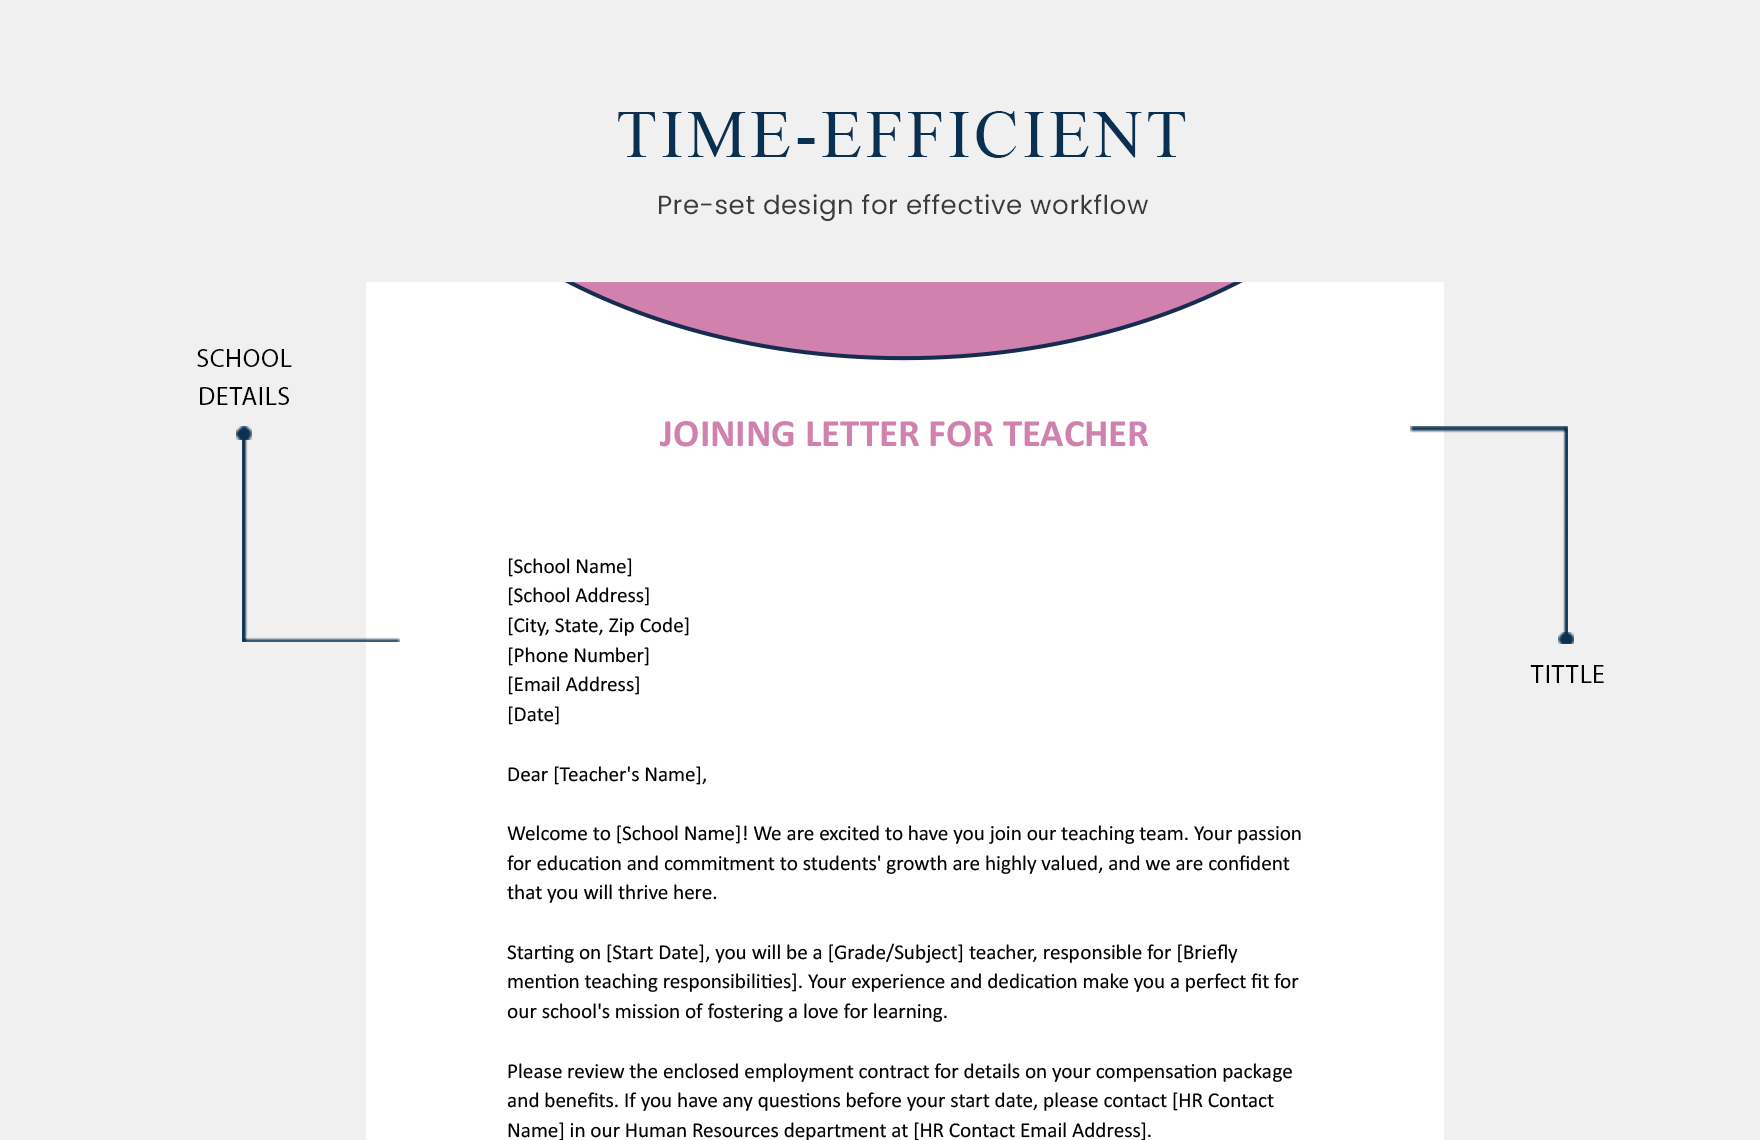 Joining Letter For Teacher